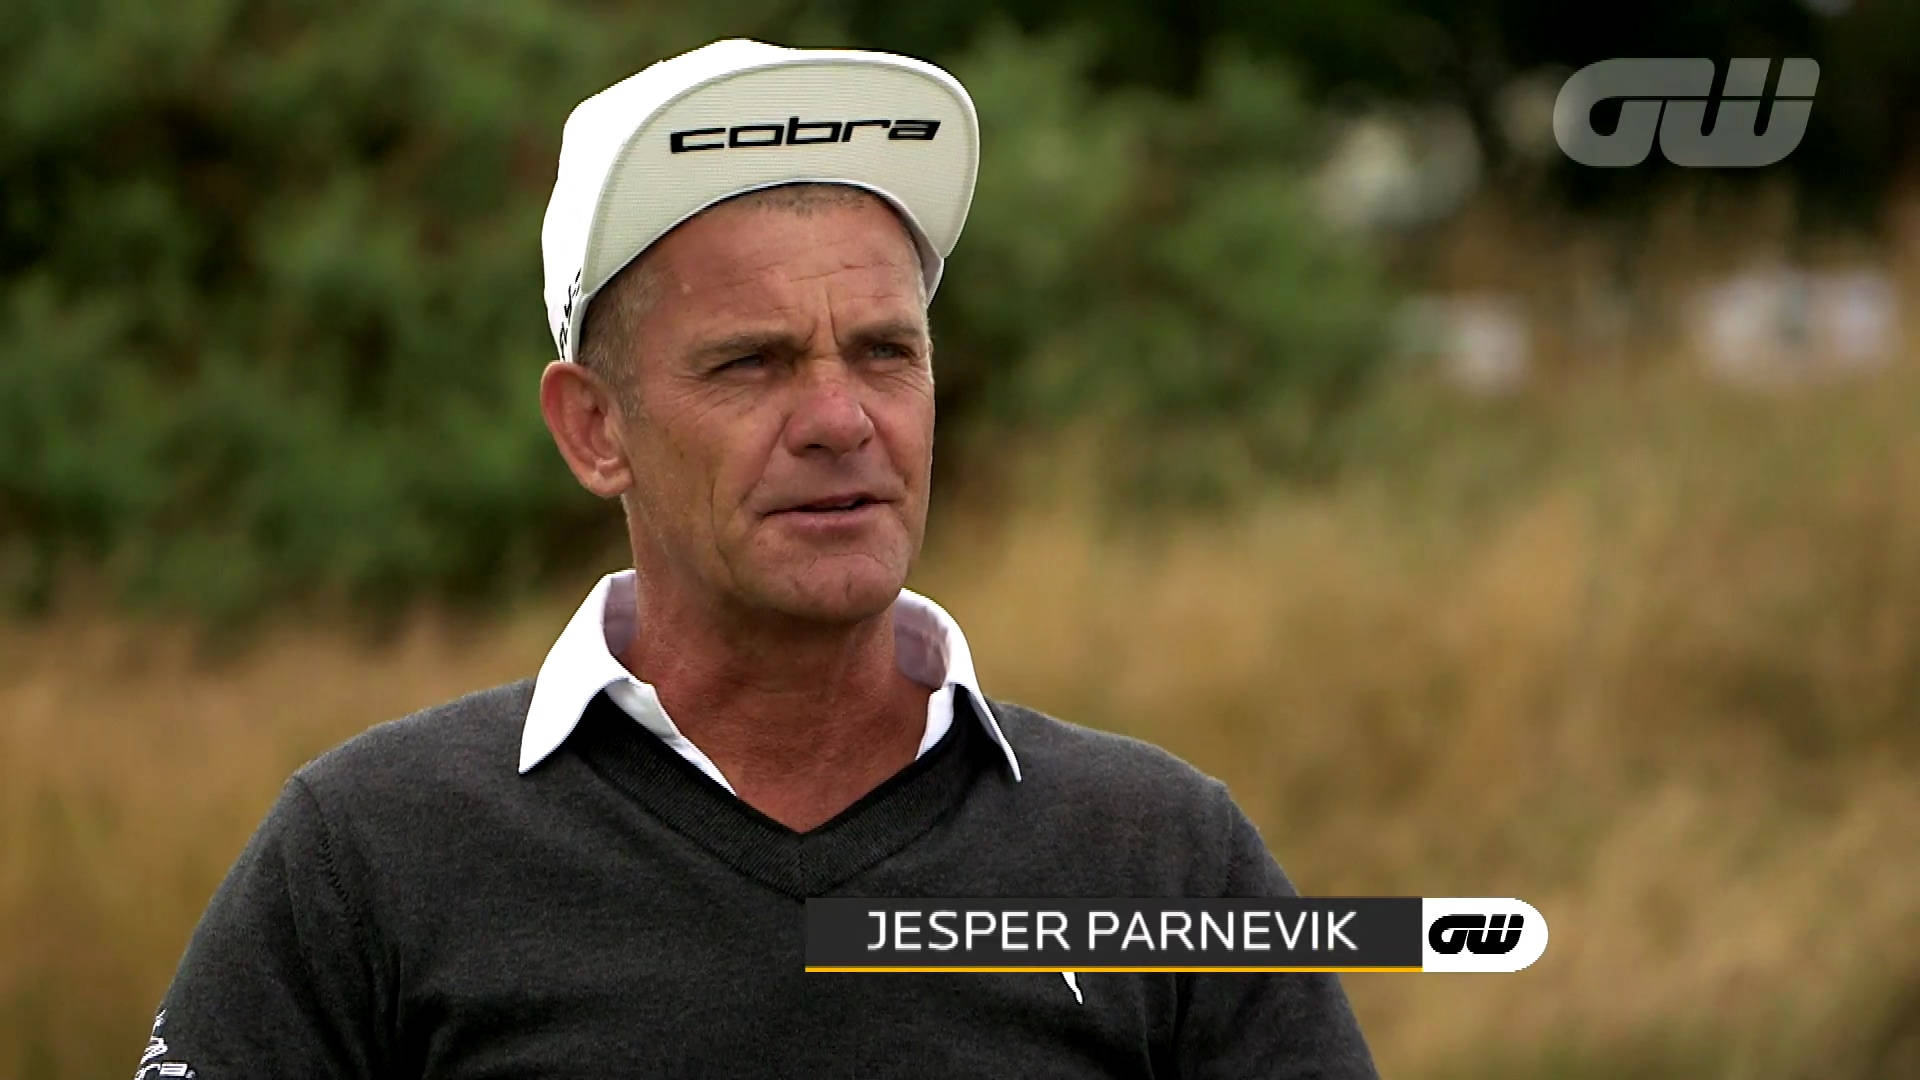 Jesper Parnevik In Golfing World Video Wallpaper